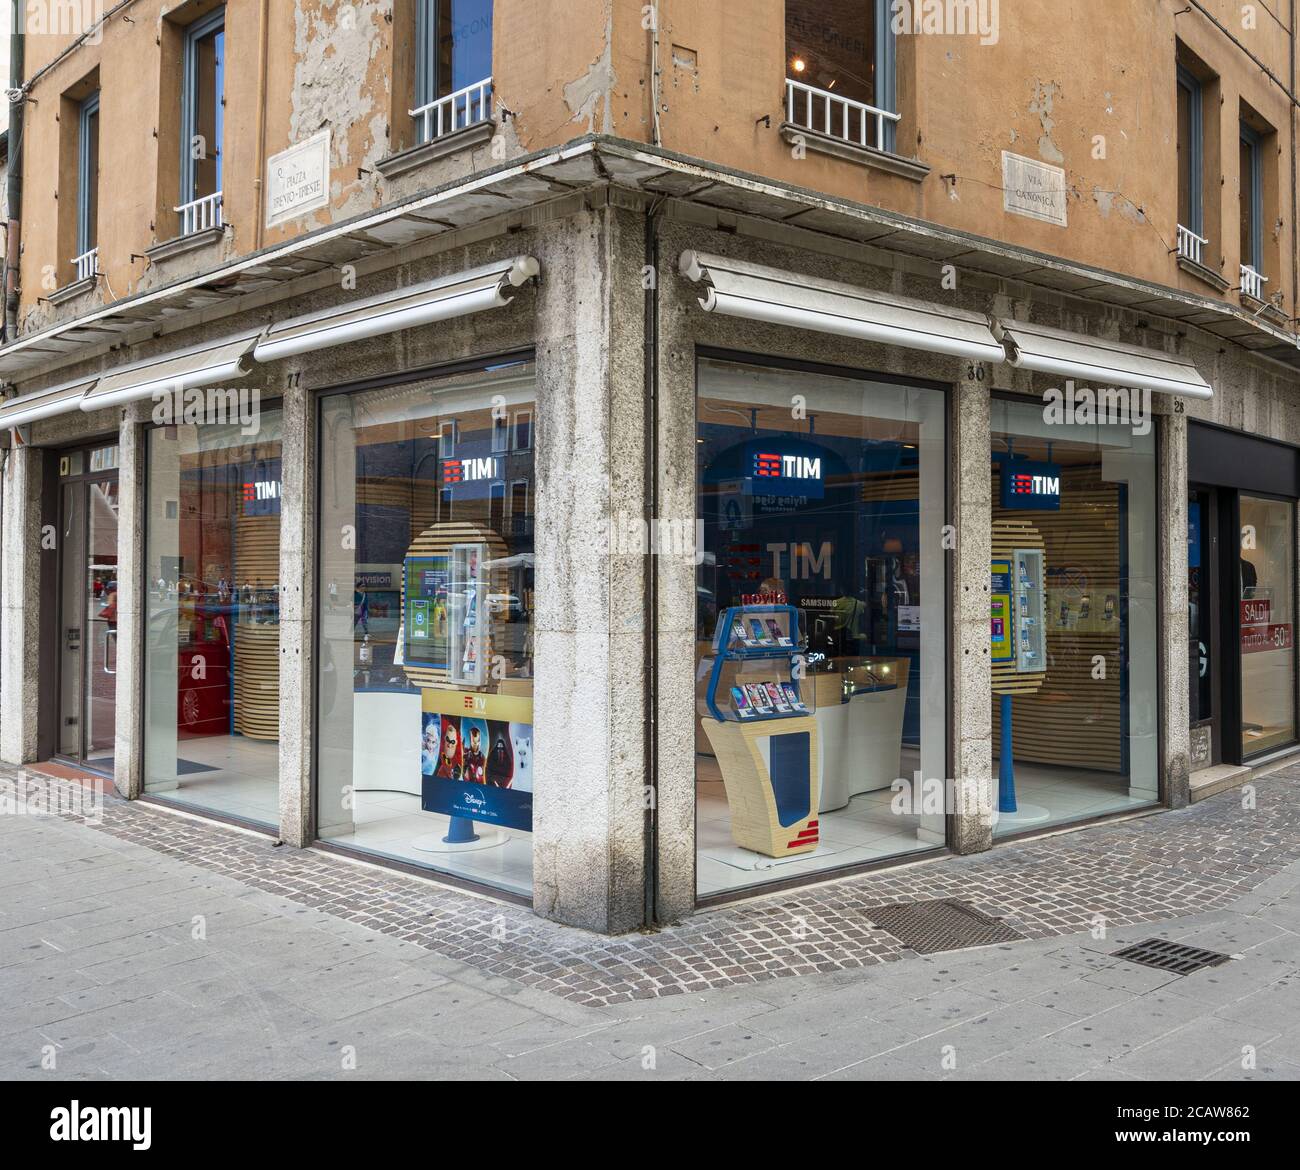 Ferrara, Italia. 6 de agosto de 2020. La ventana de la tienda de la Marca TIM en el centro de Ferrara, Italia Foto de stock